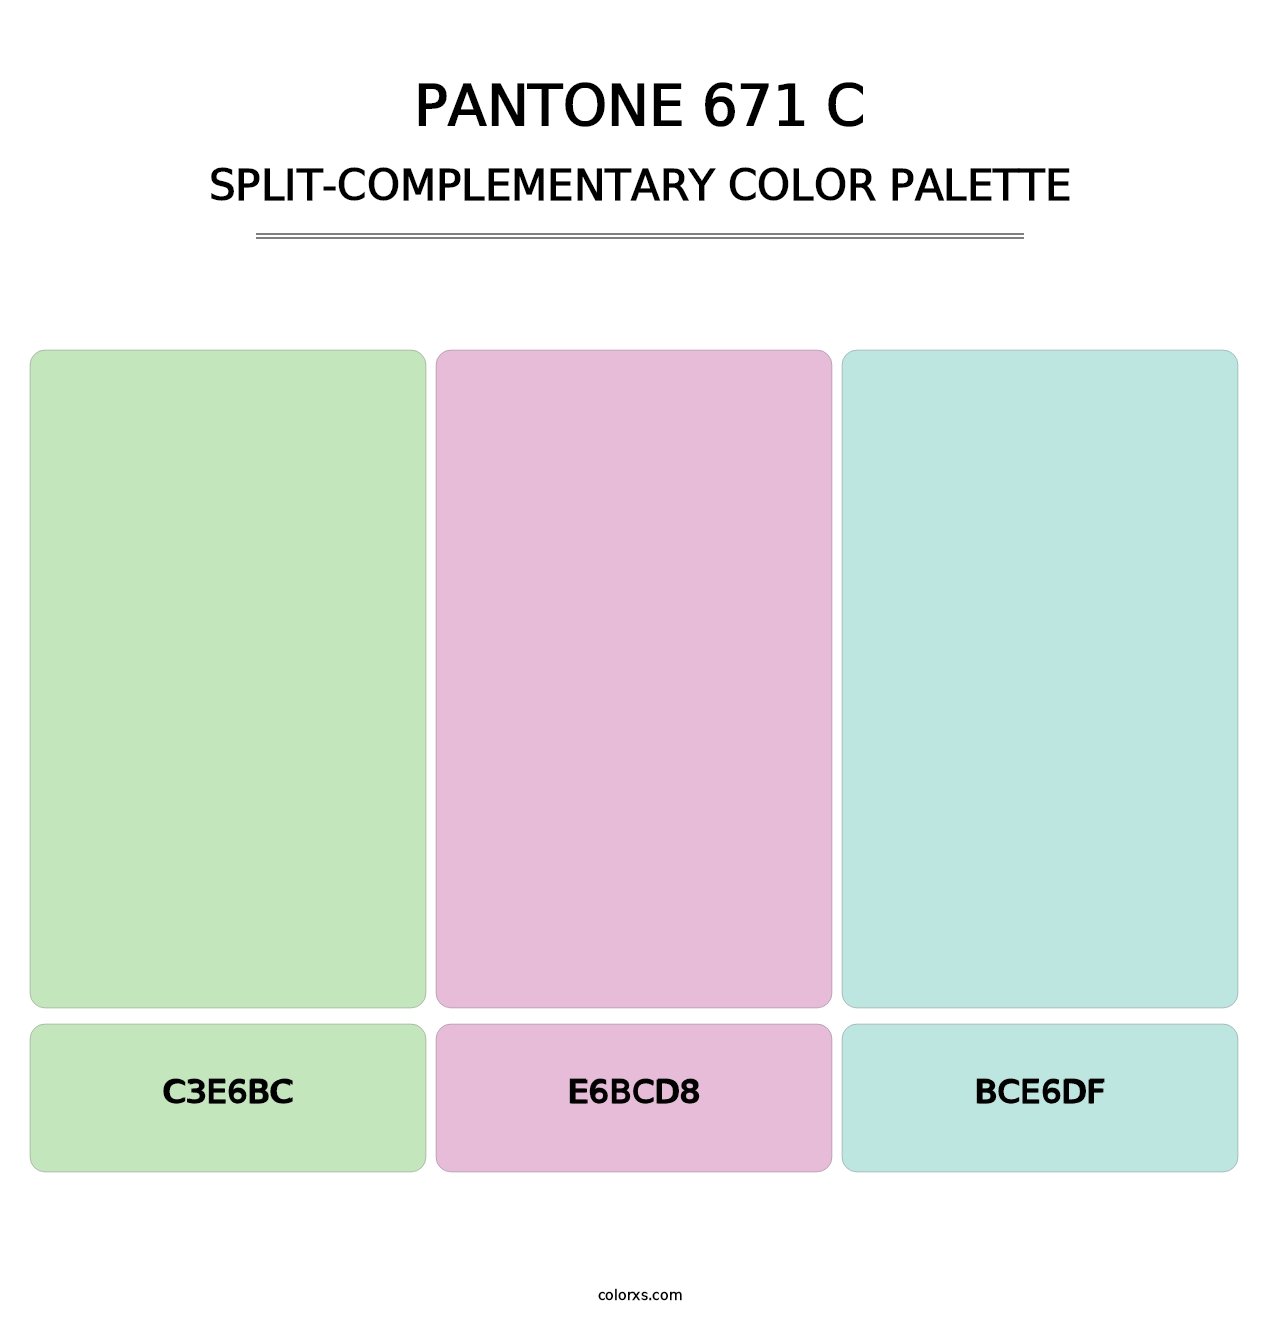 PANTONE 671 C - Split-Complementary Color Palette